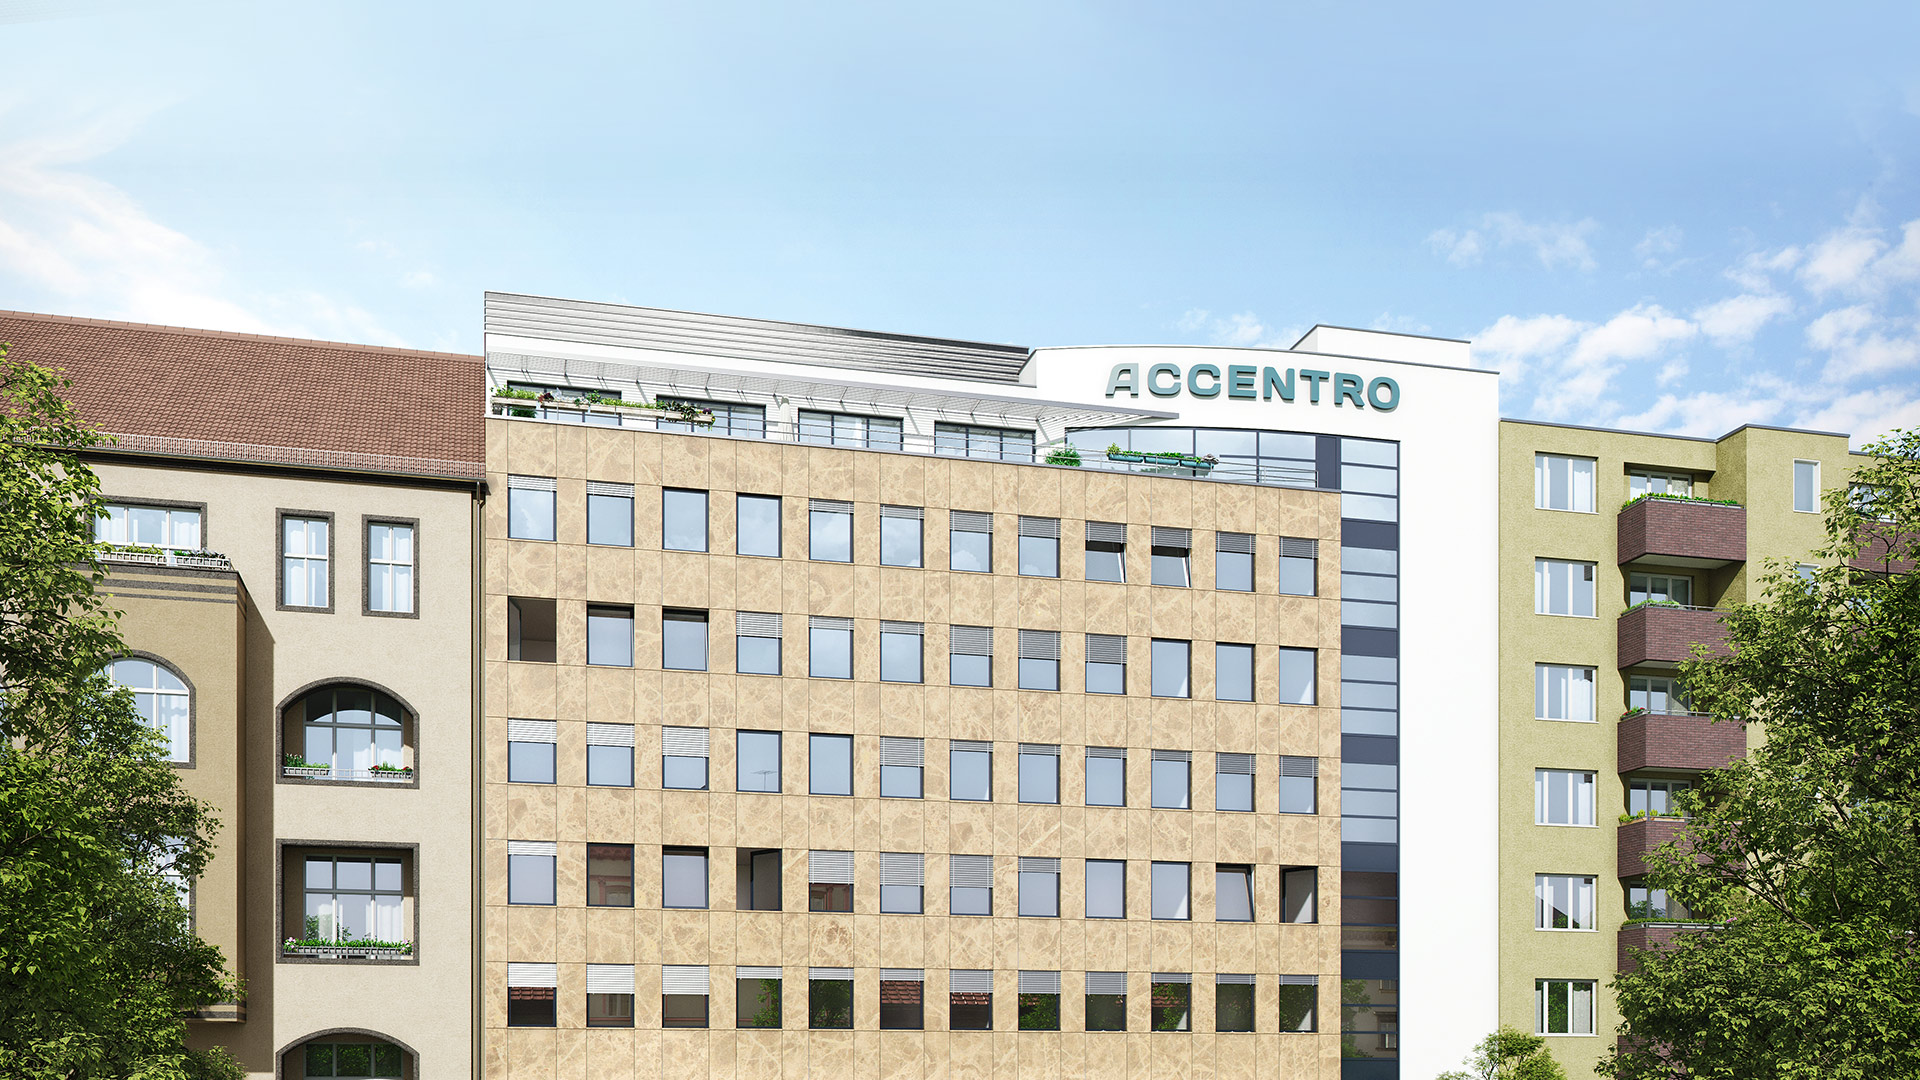 Immobilienunternehmen ACCENTRO trotzt Corona und stellt Weichen für die Zukunft